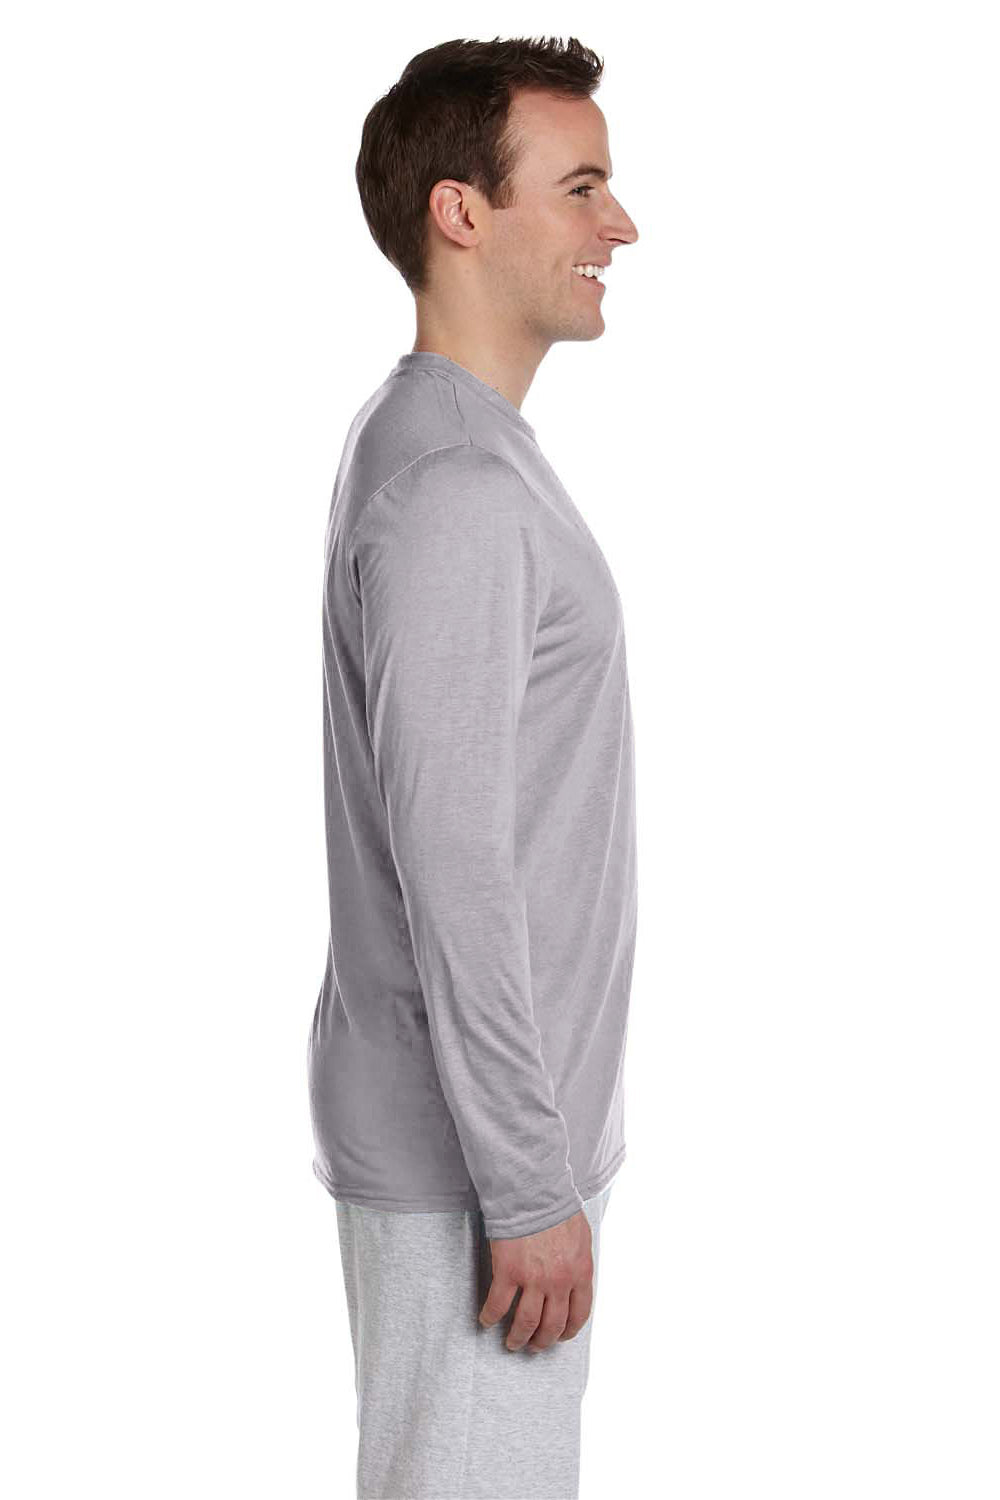 Gildan G424 Mens Performance Jersey Moisture Wicking Long Sleeve Crewneck T-Shirt Sport Grey Side